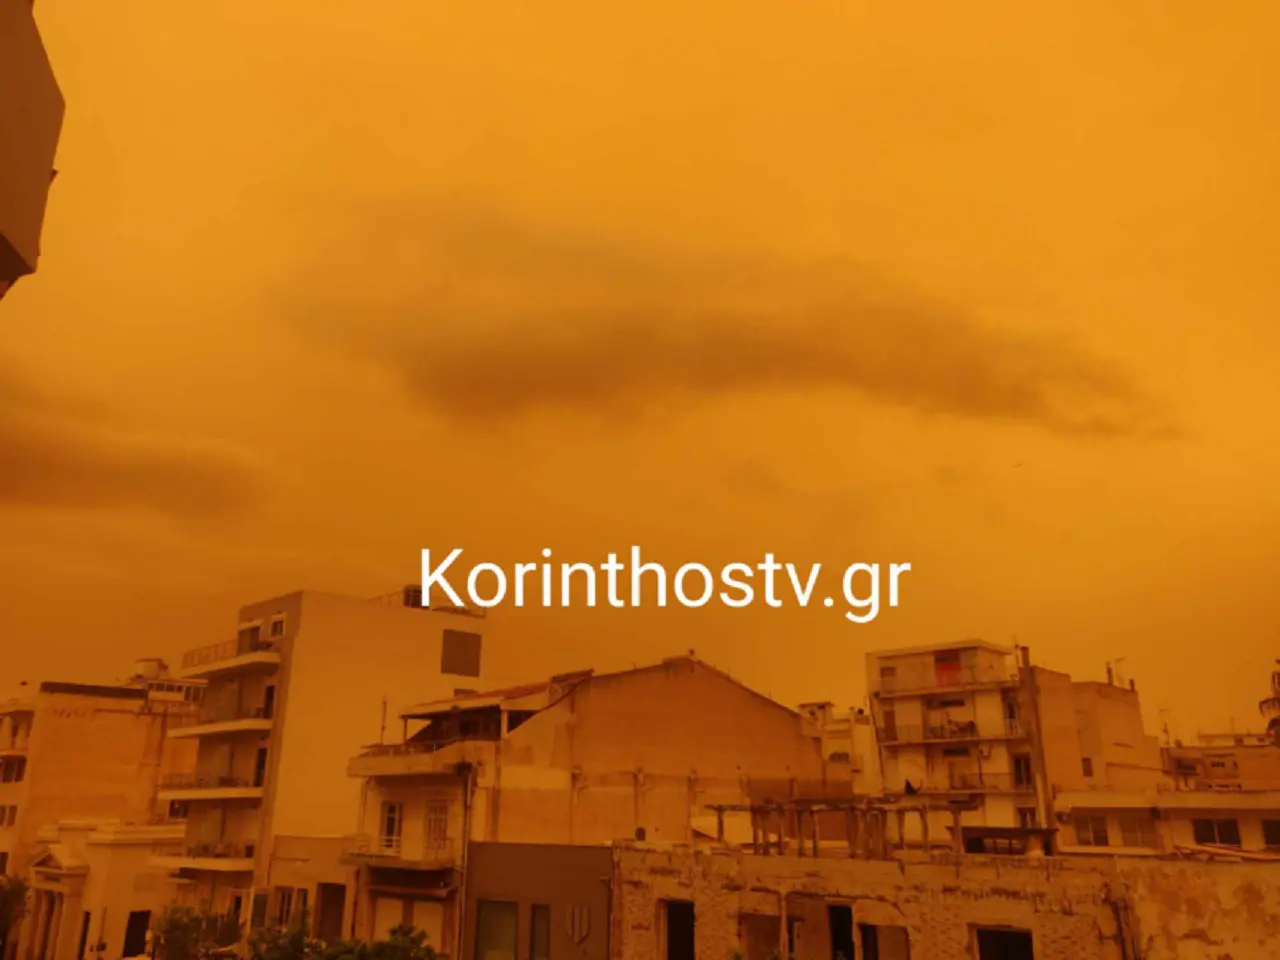 Καιρός: Η αφρικανική σκόνη «έβαψε» πορτοκαλί όλη τη χώρα, περιορισμένη η ορατότητα